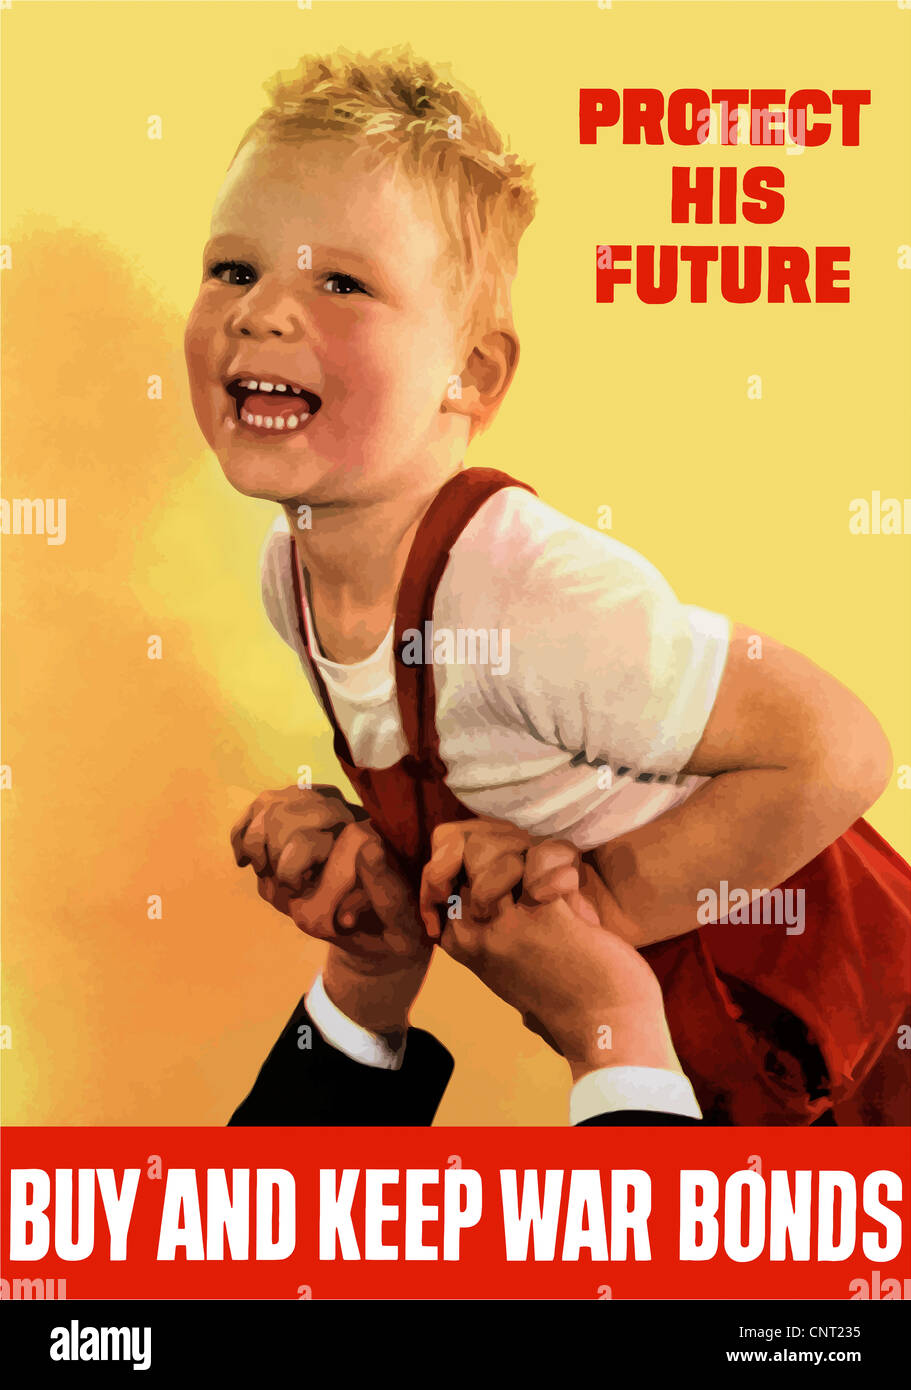 Ce millésime La Seconde Guerre mondiale poster dispose d''un père mains tenant un enfant souriant. Banque D'Images